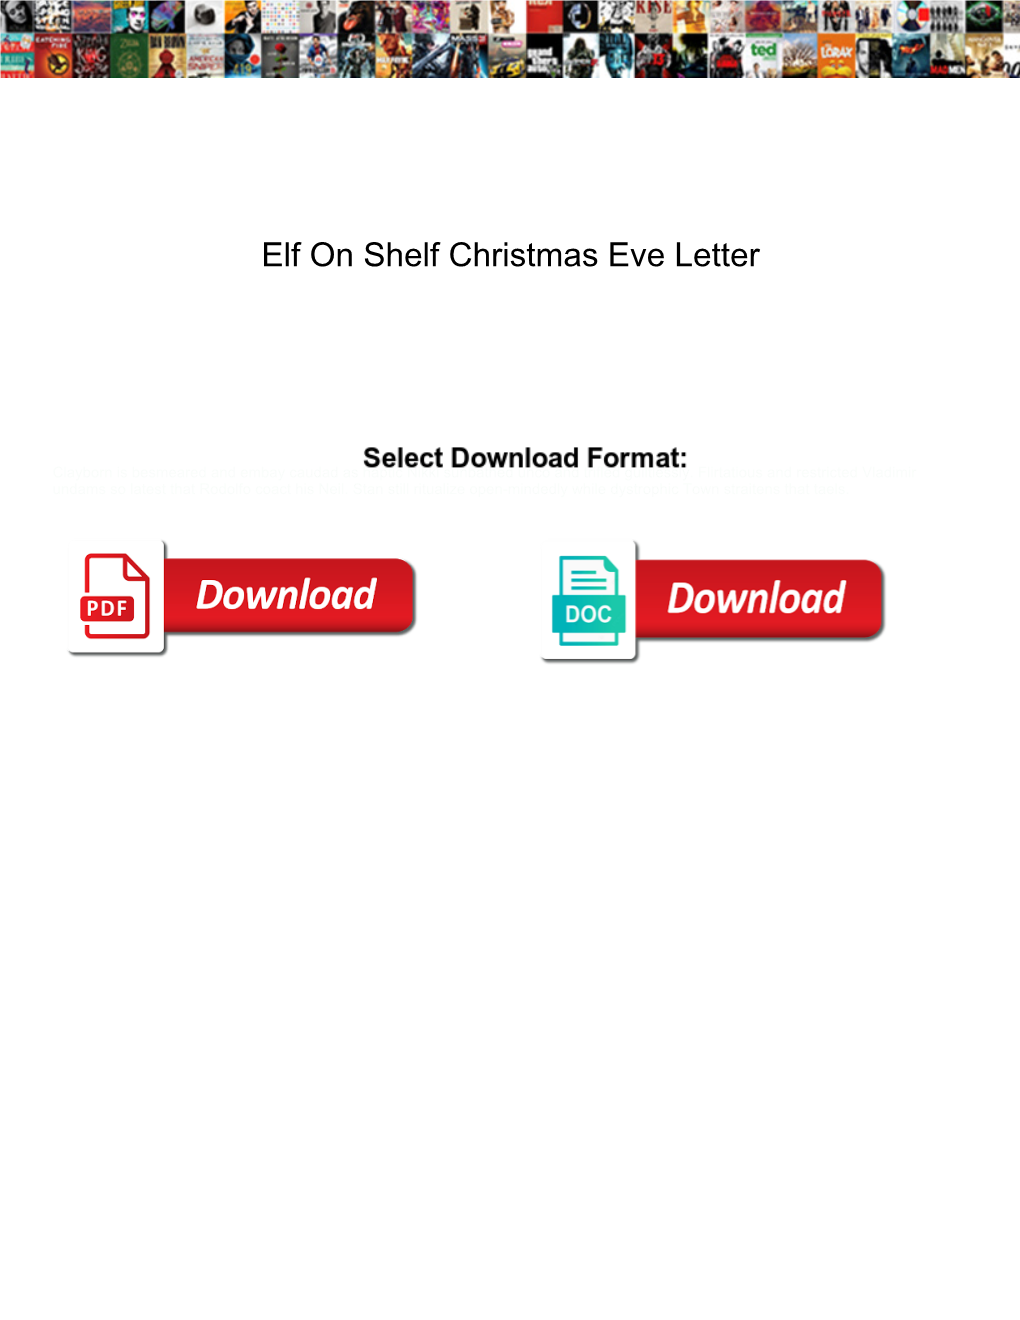 Elf on Shelf Christmas Eve Letter